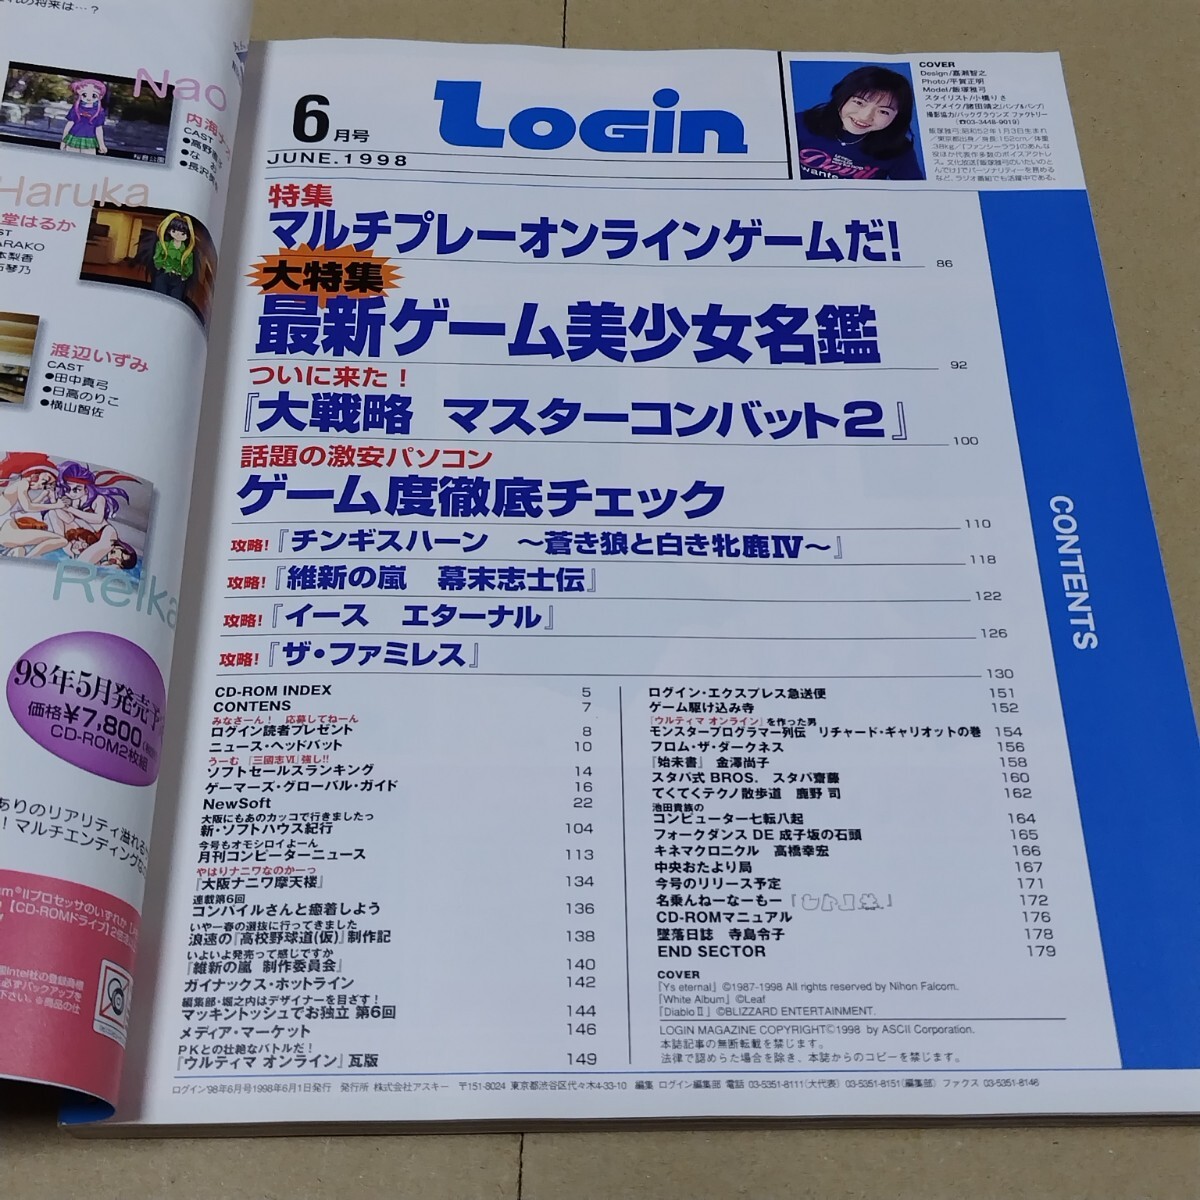 ログイン　1998年6月号 LOGIN 付録CD-ROM(未開封)あり_画像6